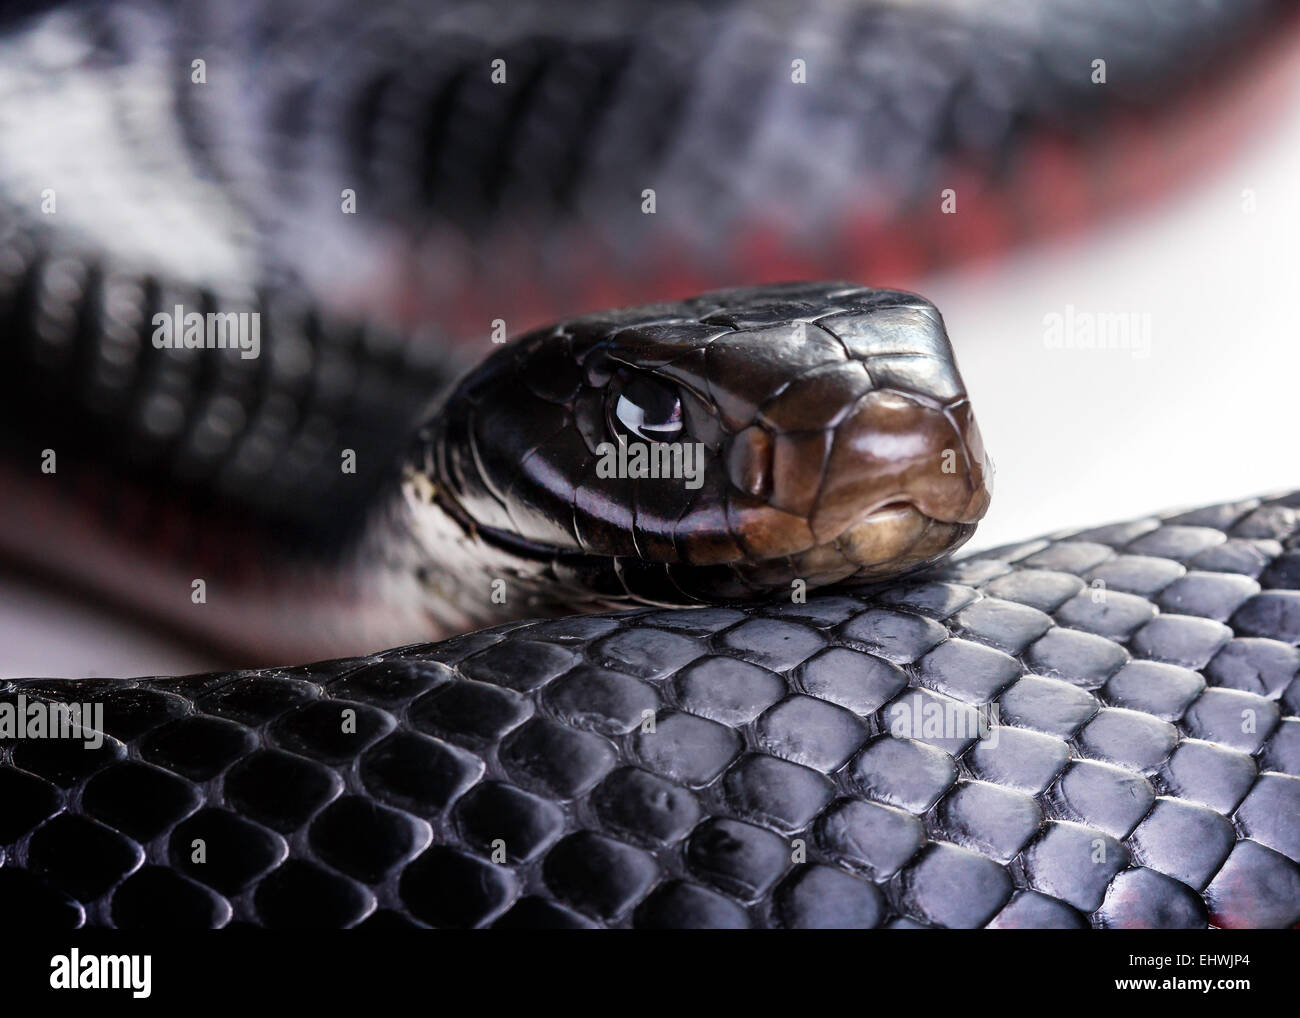 Un red bellied Black Snake (Pseudechis) porphyriacus de près sur un fond blanc Banque D'Images